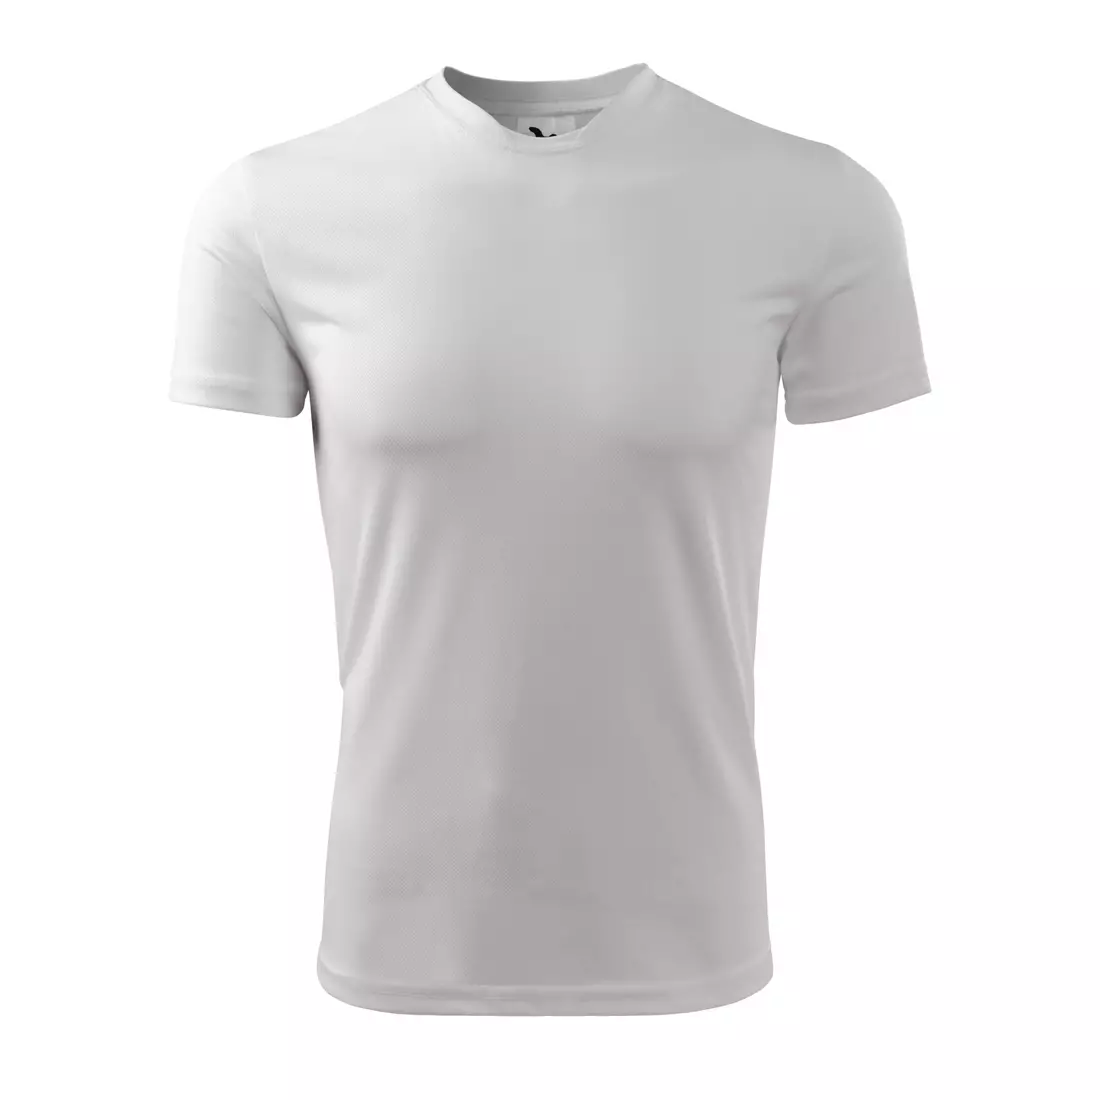 MALFINI FANTASY - férfi sport póló 100% poliészter, fehér 1240013-124